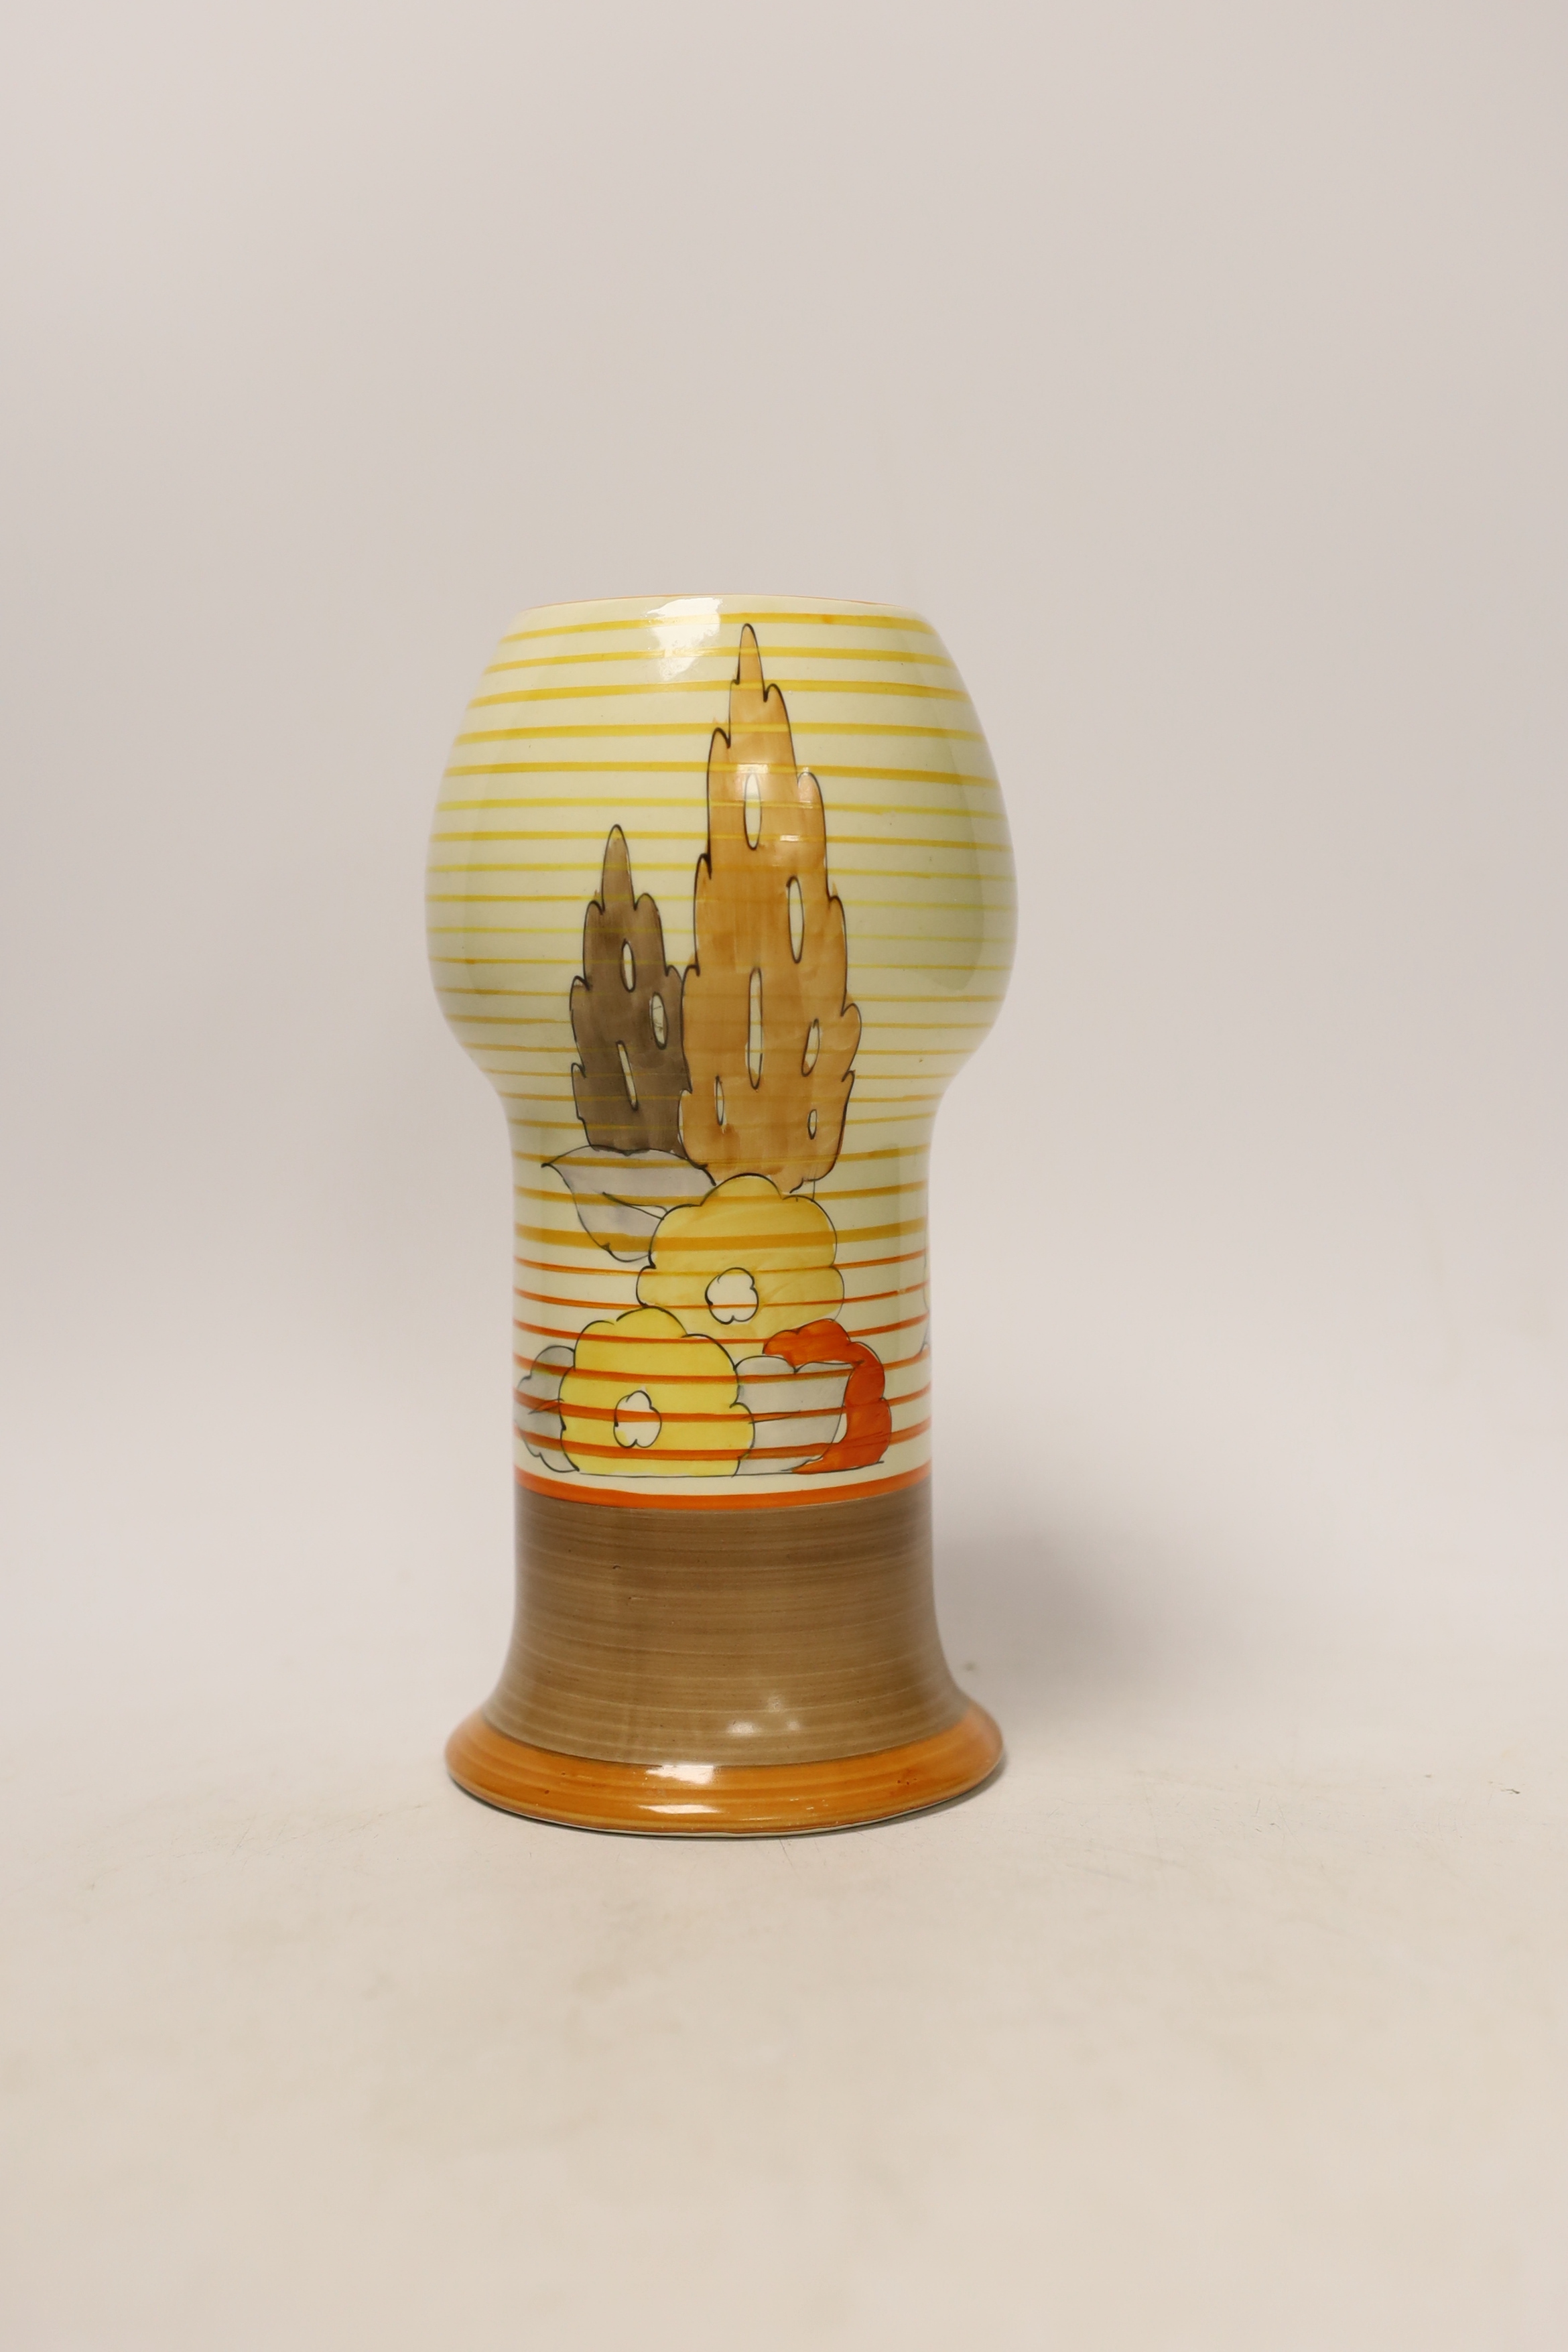 A Clarice Cliff Bizarre ‘orange capri’ vase, 20cm high